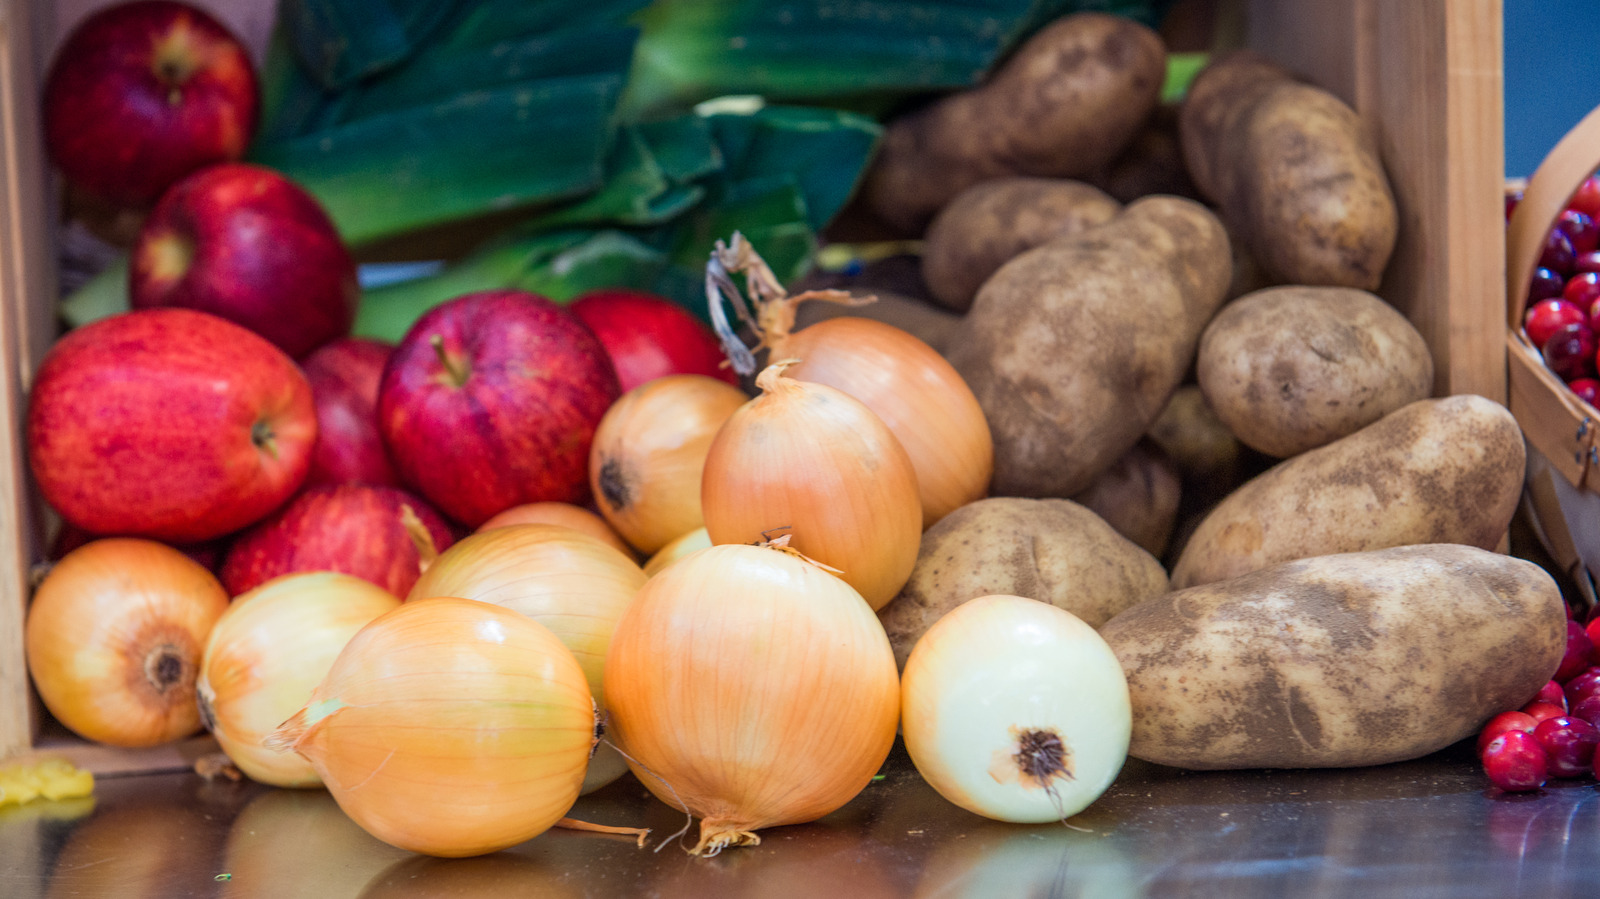 Cebollas, manzanas y patatas: ¿qué puedo guardar juntas?